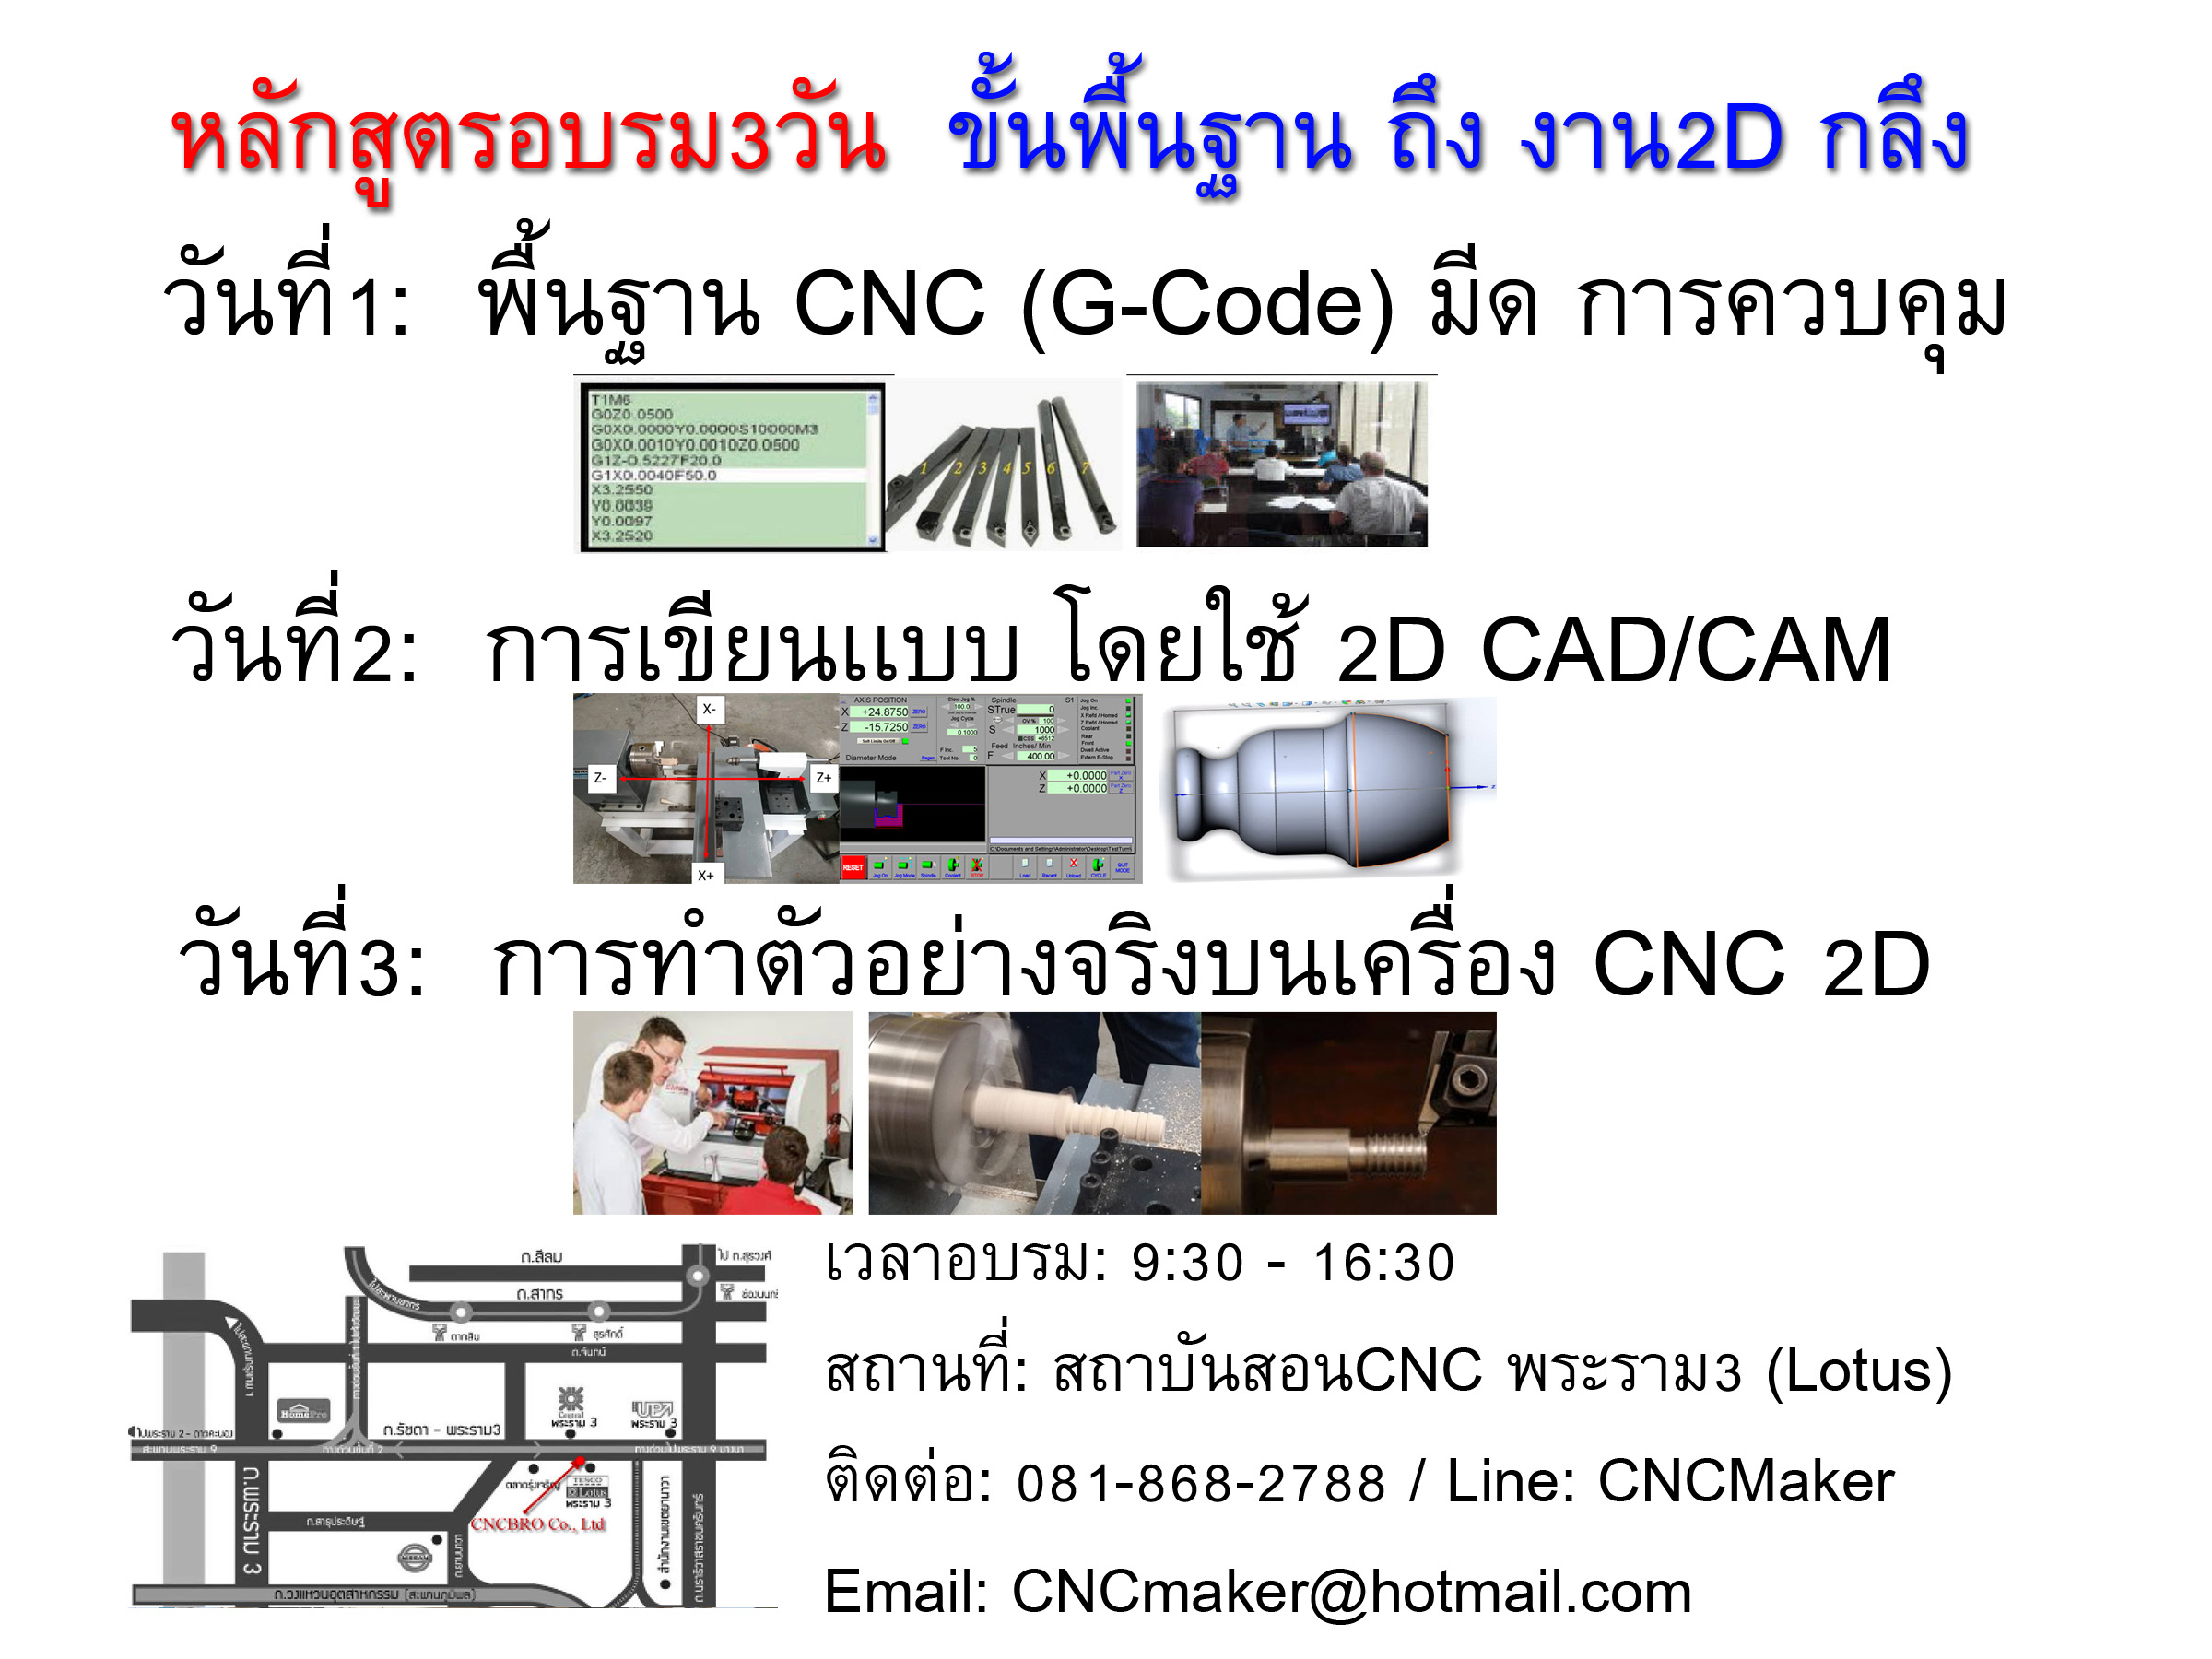 รับสอนโปรแกรม และการใช้งานเครื่อง CNC สอนทั้งทฤษฎีและปฎิบัติ จากเครื่อง CNC สนใจสอบถามได้ที่ โทร.085-842-2700